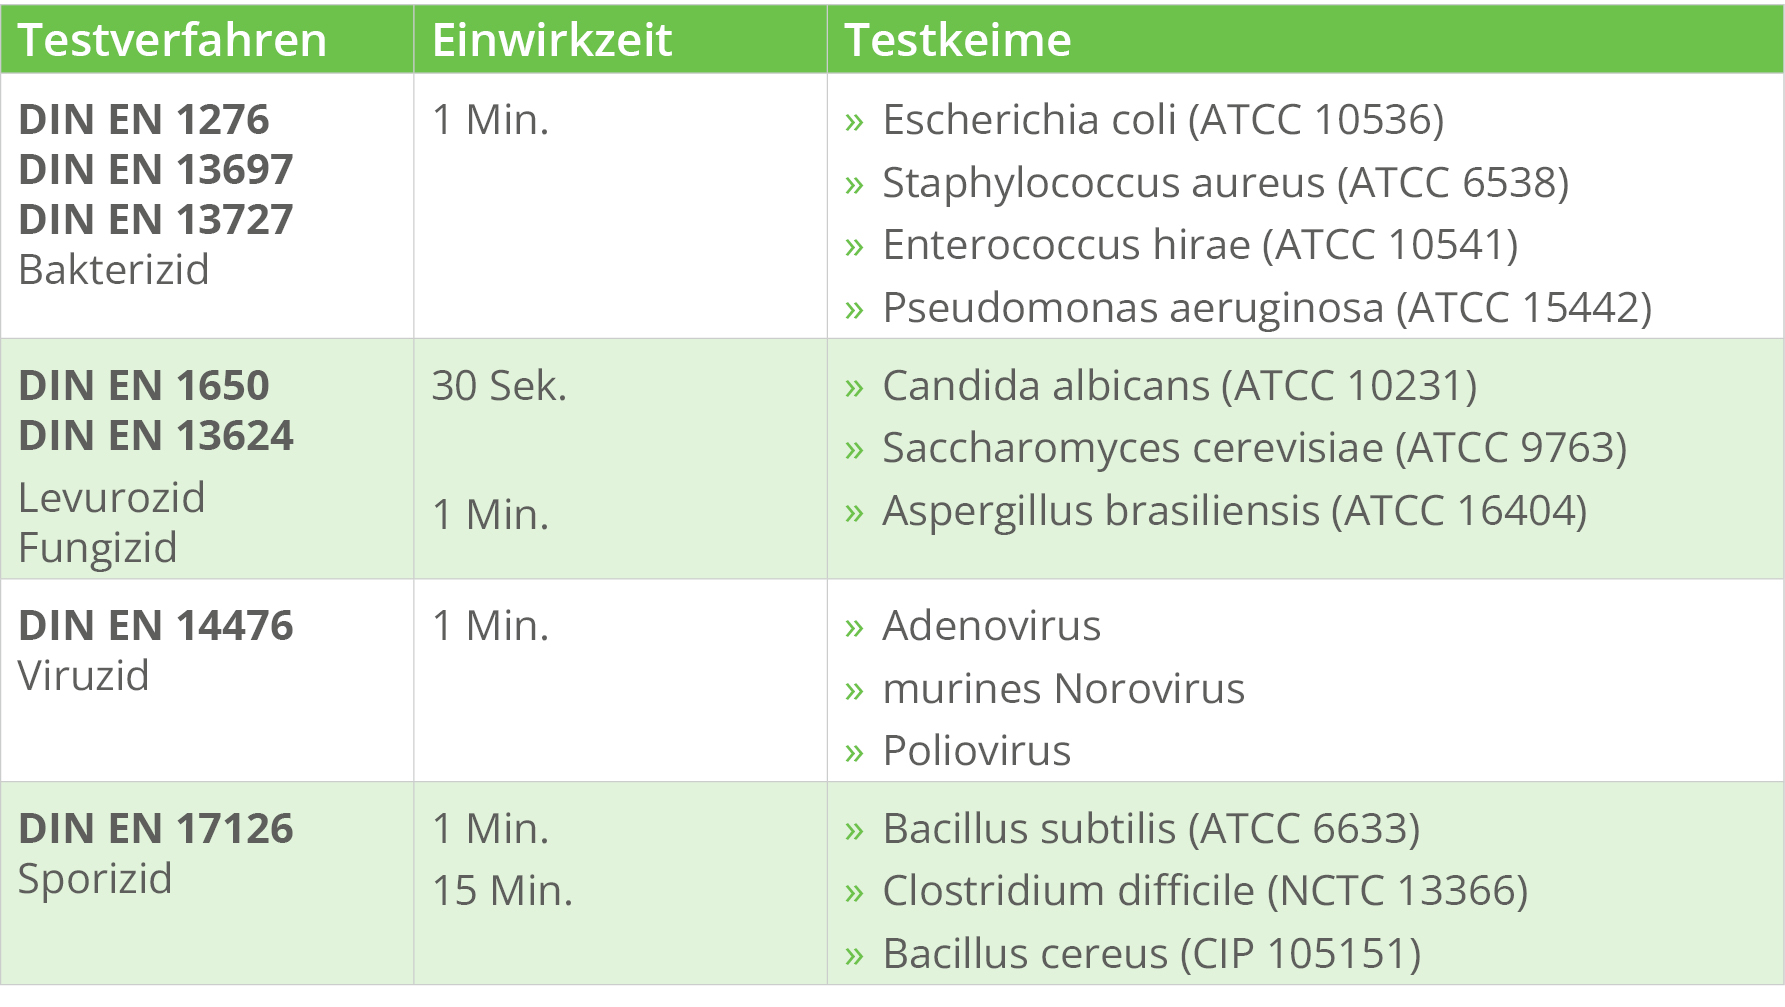 Testverfahren Bakterizid: DIN EN 1276, DIN EN 13697, DIN EN 13727 mit 1 Min. Einwirkzeit gegen Escherichia coli (ATCC 10536), Staphylococcus aureus (ATCC 6538), Enterococcus hirae (ATCC 10541) und Pseudomonas aeruginosa (ATCC 15442) Testverfahren Levurozid/Fungizid: DIN EN 1650, DIN EN 13624 mit 30 Sek. Einwirkzeit gegen Candida albicans (ATCC 10231) und Saccharomyces cerevisiae (ATCC 9763) und 1 Min. Einwirkzeit gegen Aspergillus brasiliensis (ATCC 16404) Testverfahren Viruzid: DIN EN 14476 mit 1 Min. Einwirkzeit gegen Adenovirus, murines Norovirus und Poliovirus Testverfahren Sporizid: DIN EN 17126 mit 1 Min. Einwirkzeit gegen Bacillus subtilis (ATCC 6633) und 15 Min. Einwirkzeit gegen Clostridium difficile (NCTC 13366) und Bacillus cereus (CIP 105151)